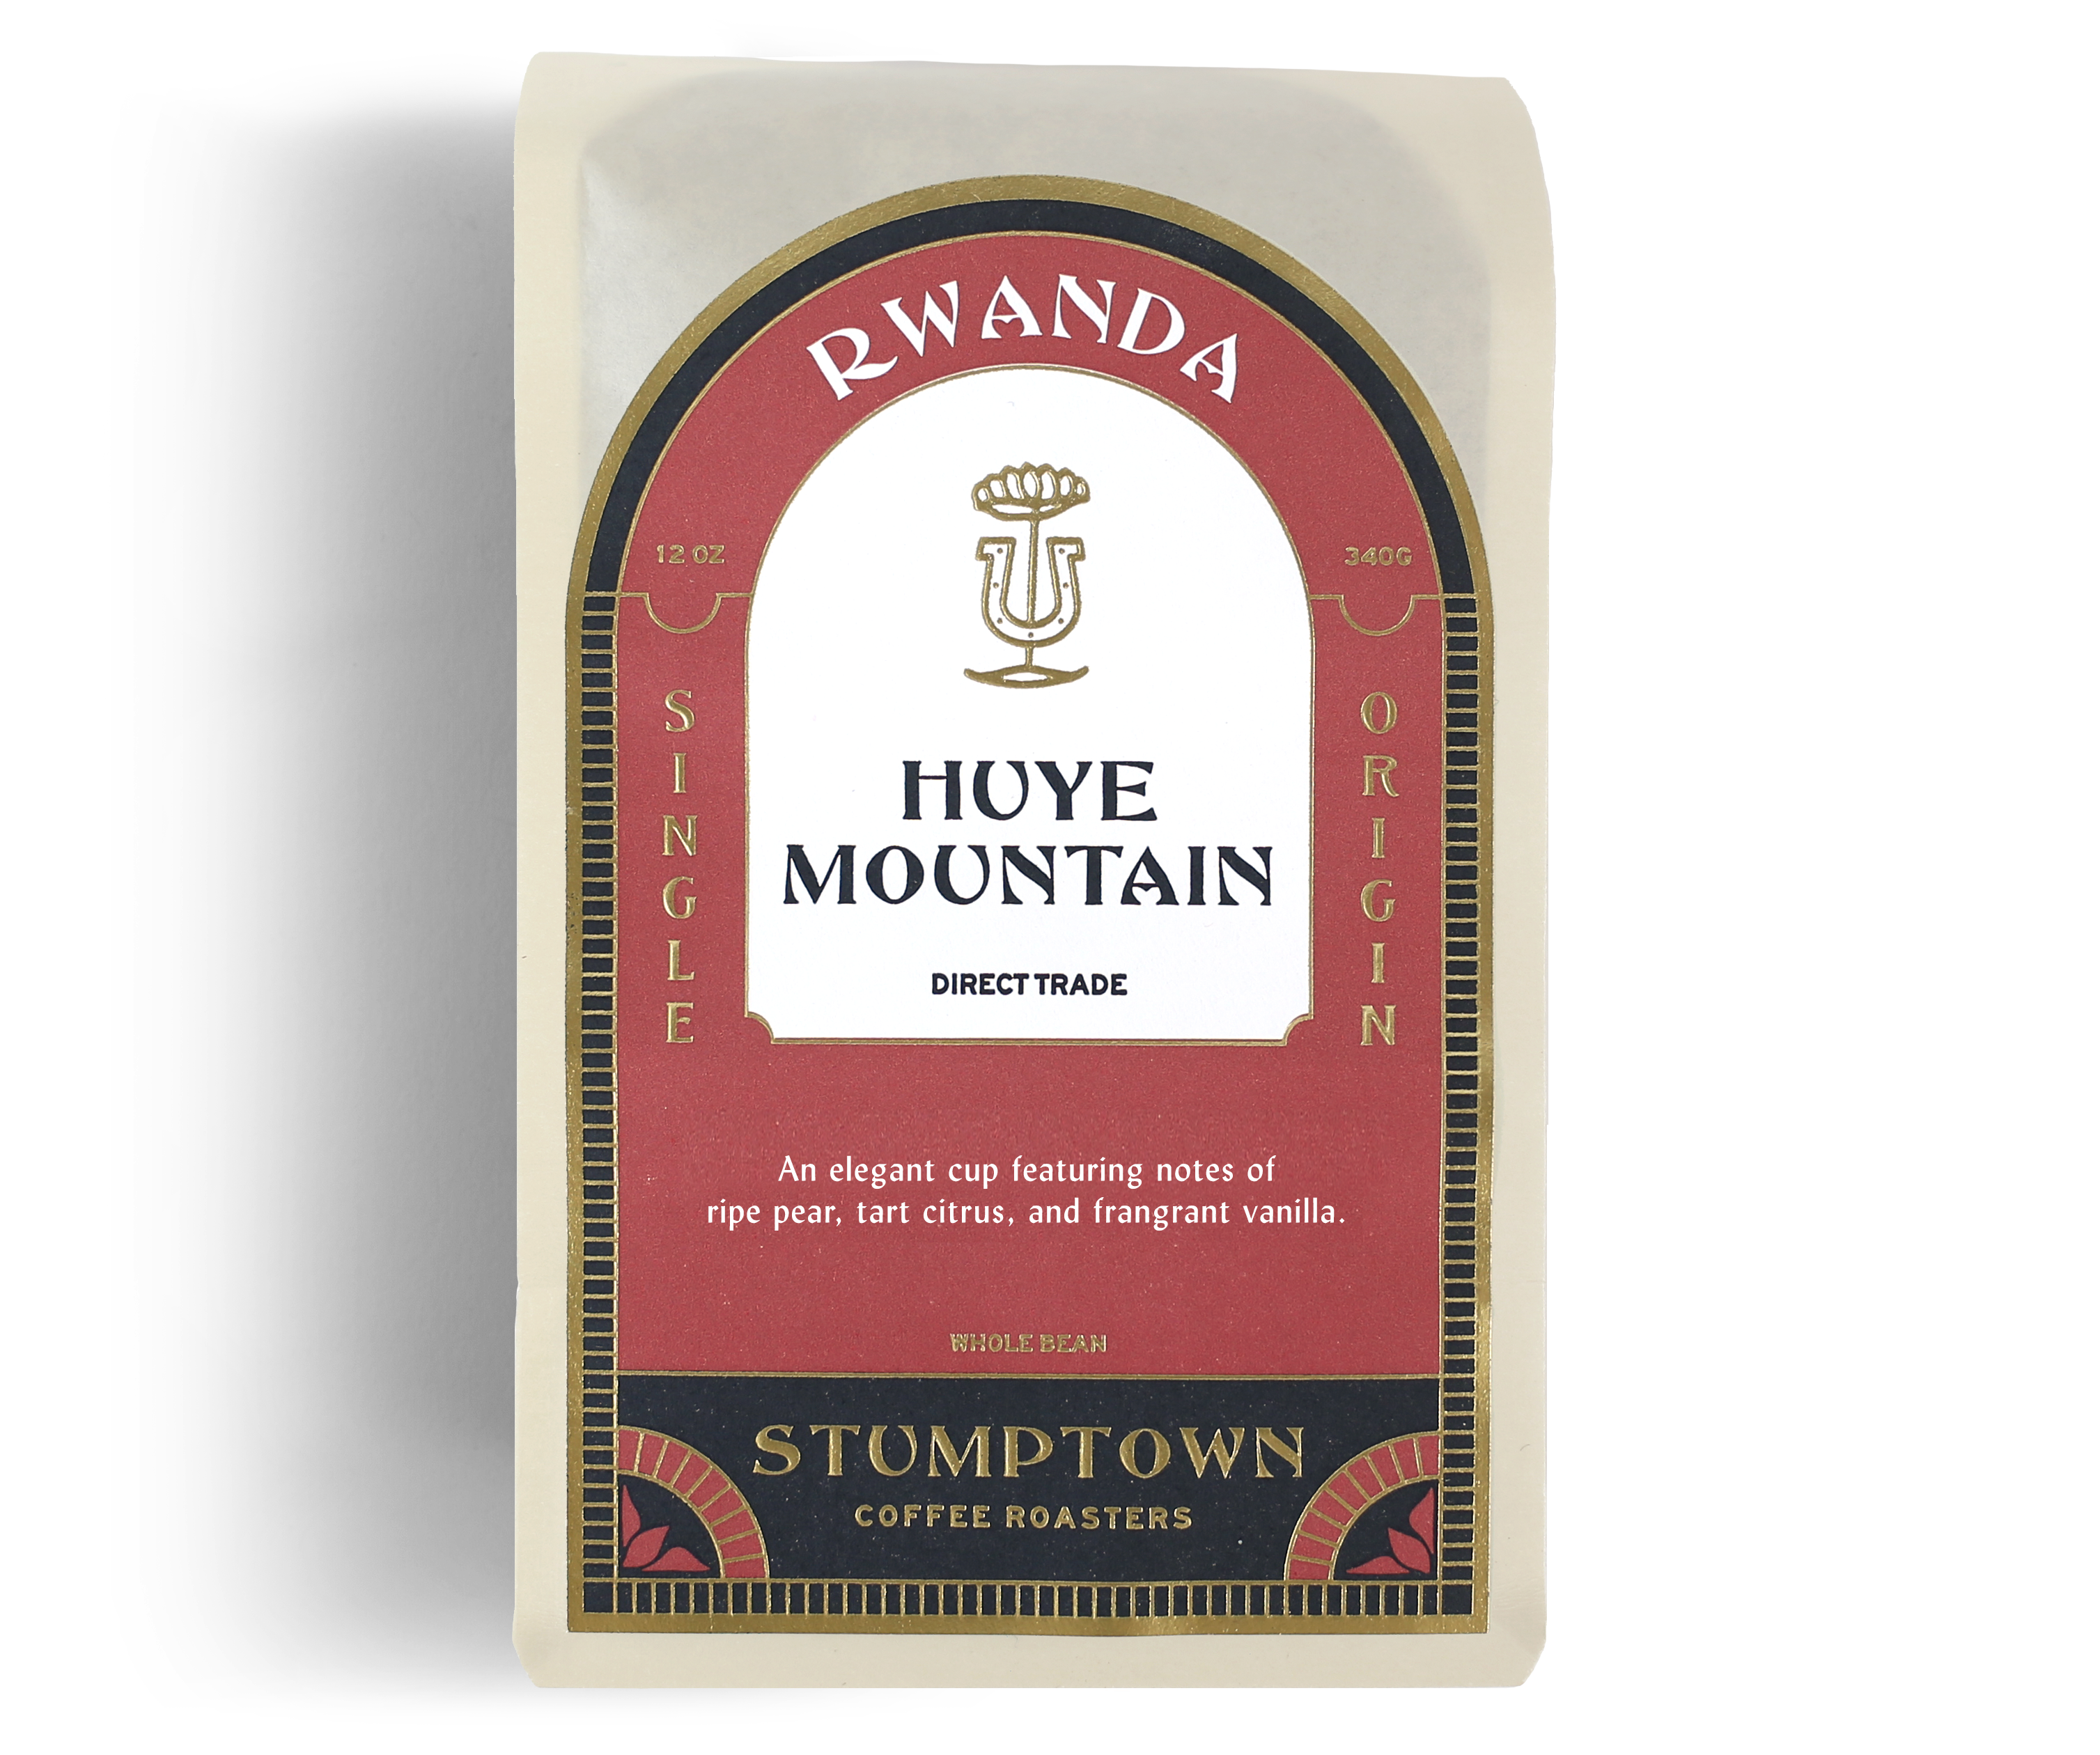 www.stumptowncoffee.com